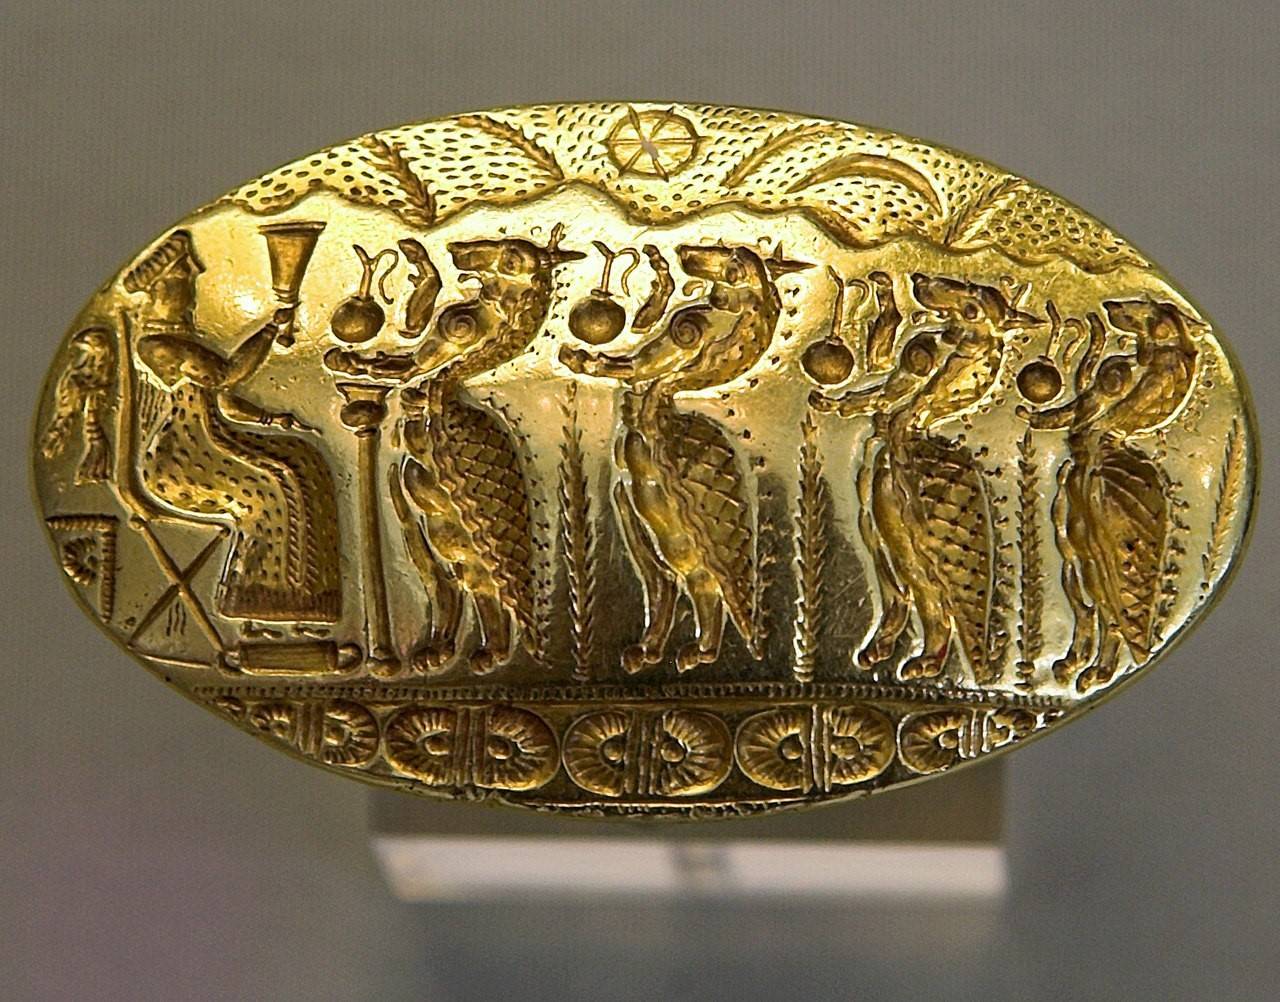 Minoïsche ring uit de vijftiende eeuw v.Chr.